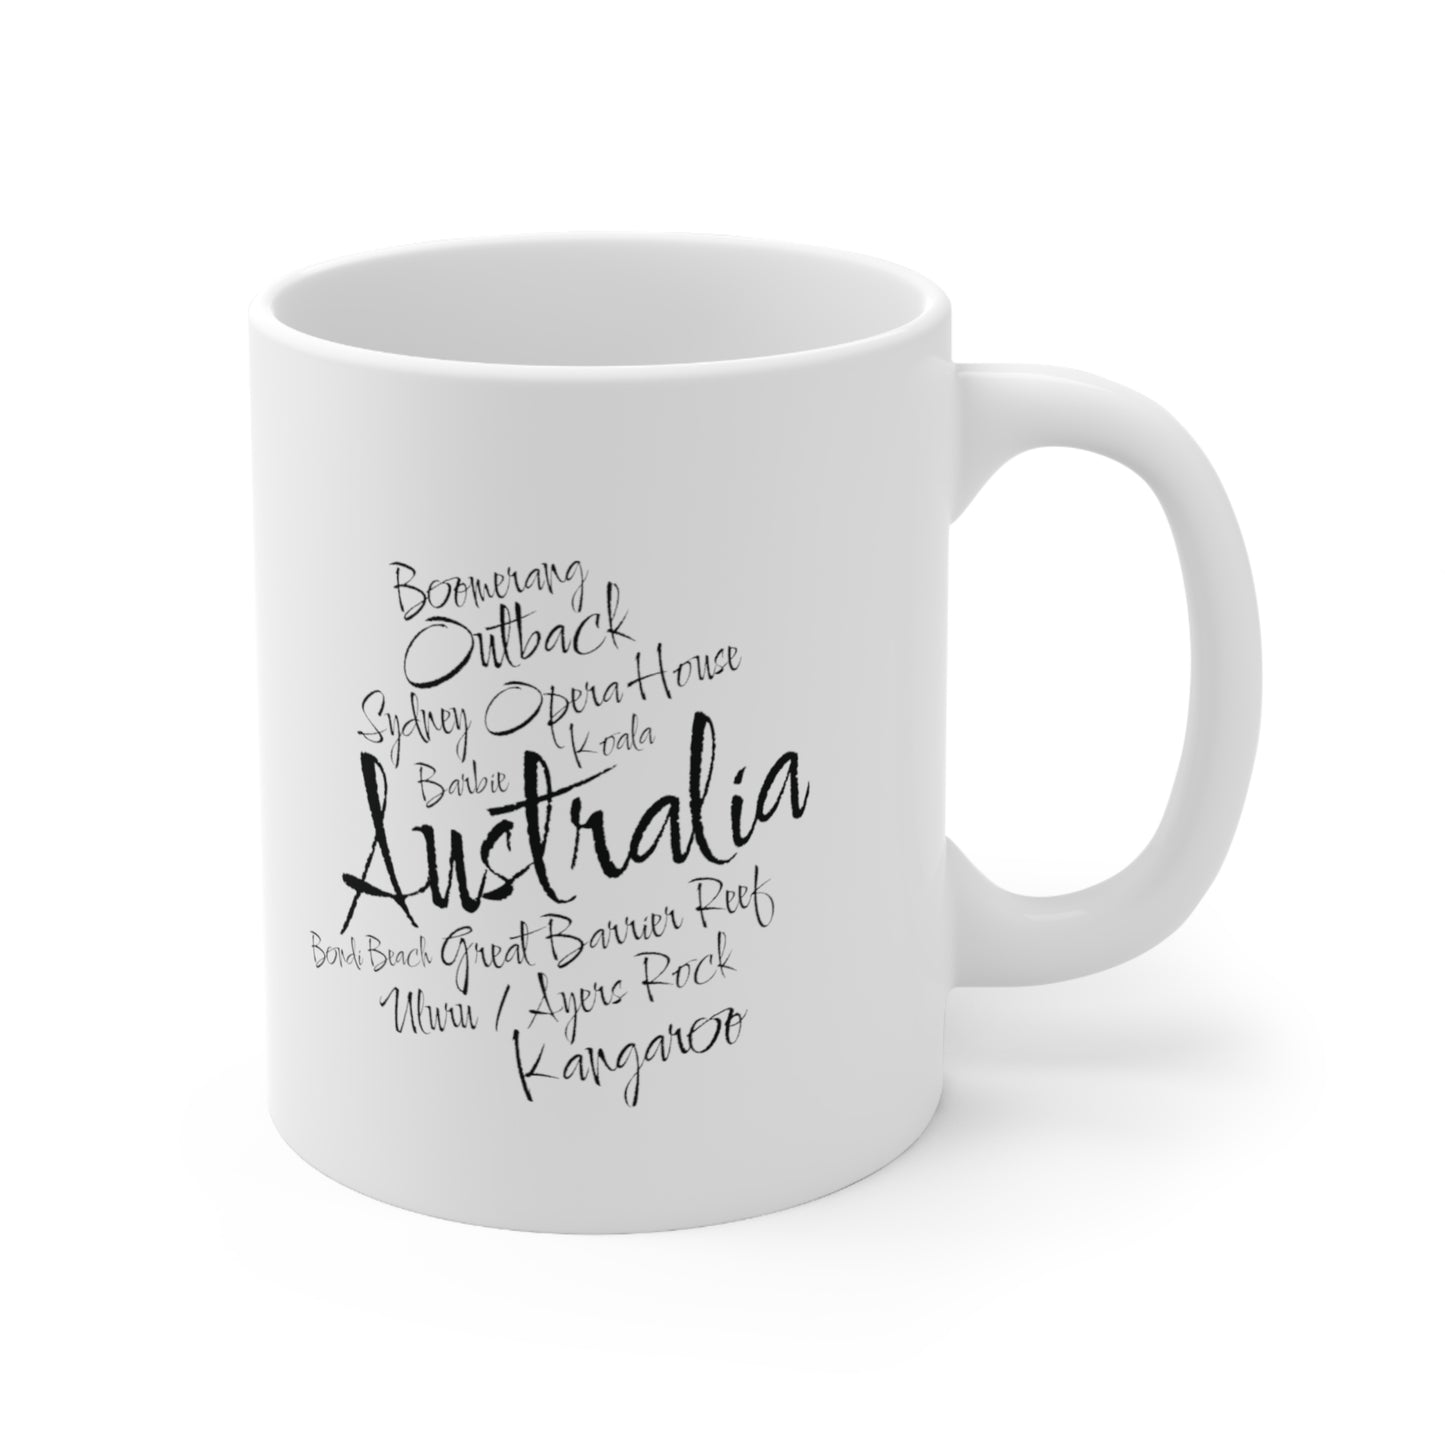 Australia word mug, local mug, geography mug, gift, mug, coffee cup, word mug, wordcloud mug, christmas gift, birthday gift